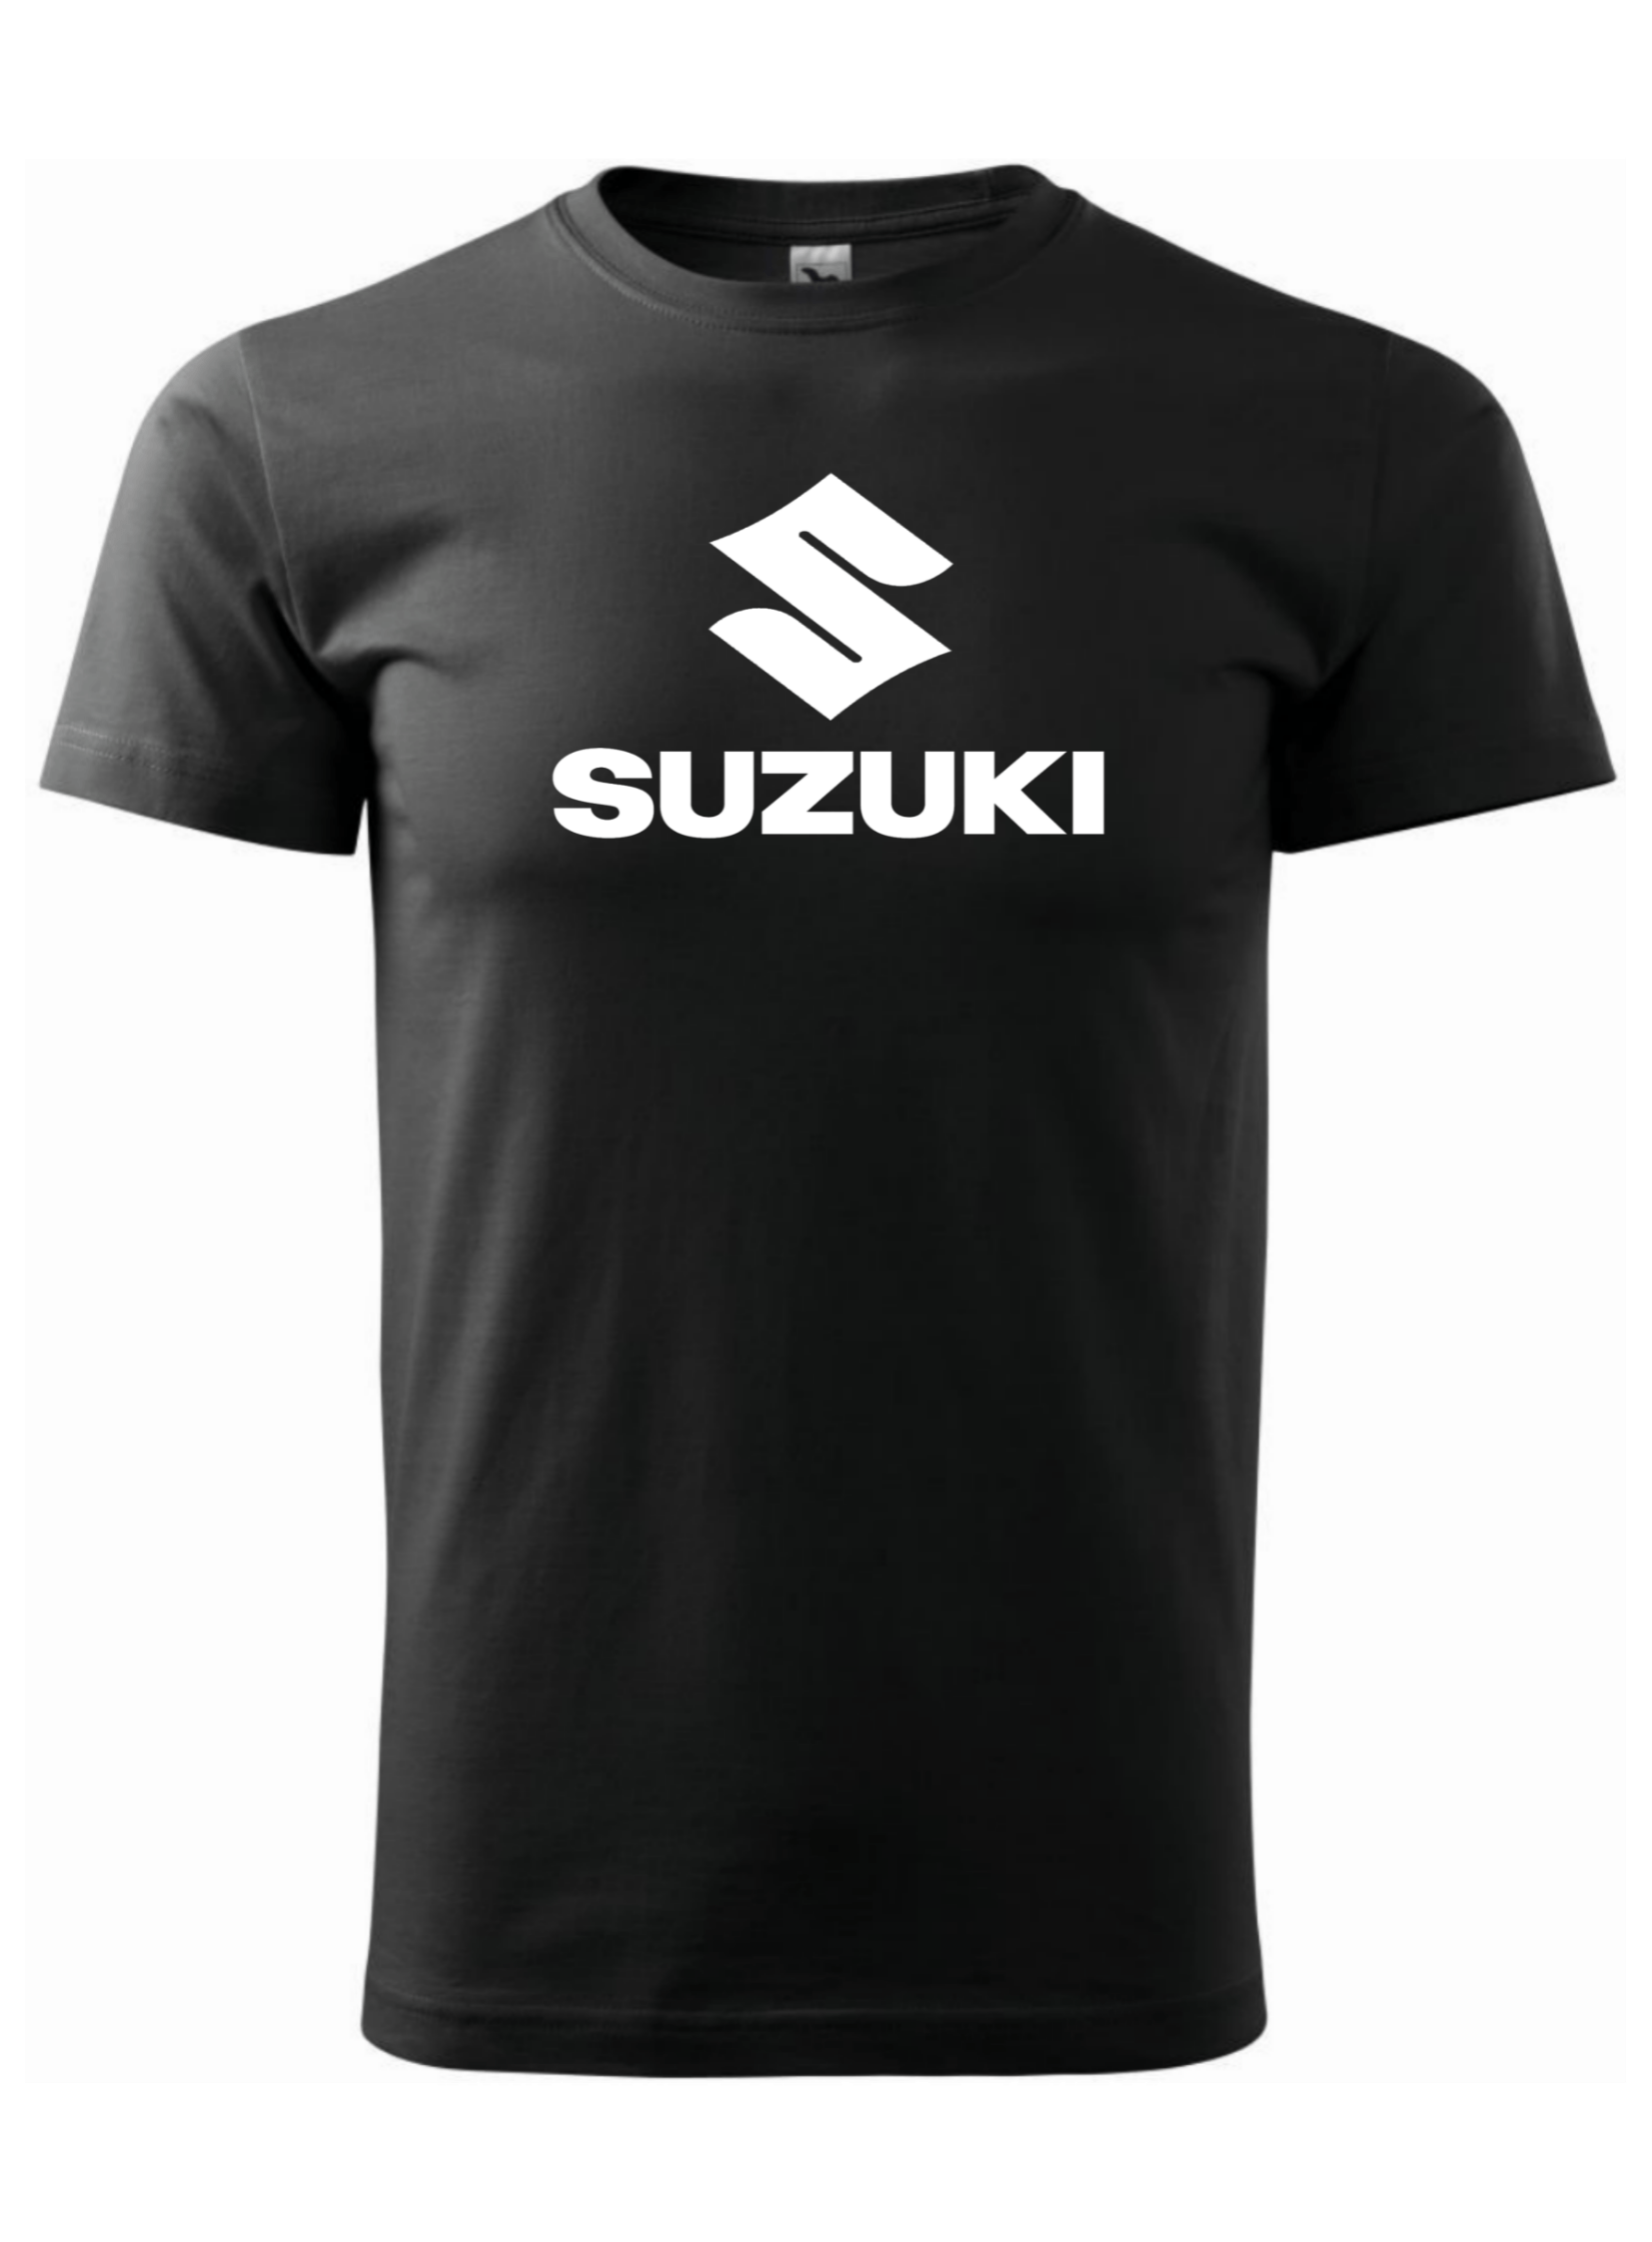 Pánské tričko s potiskem značky Suzuki 2